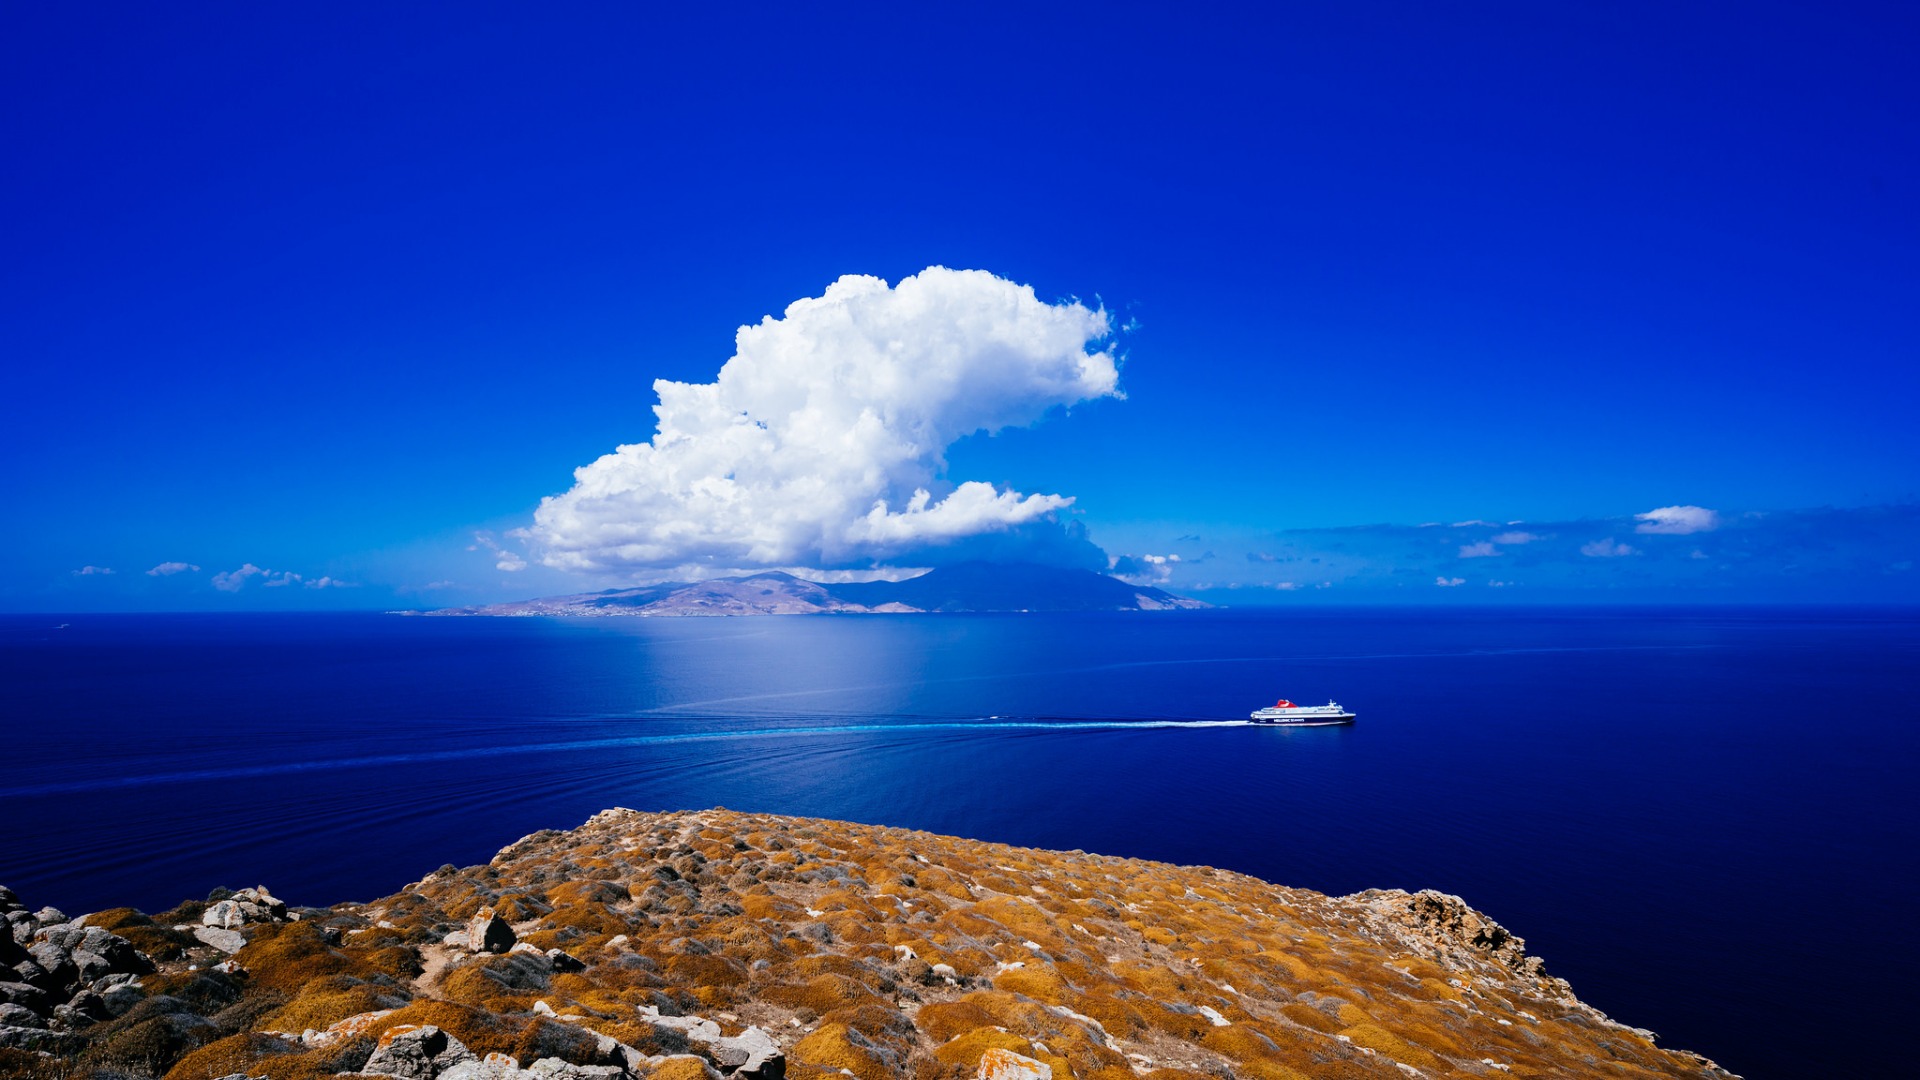 米科诺斯,希腊,爱琴海,大海,蓝天白云,风景桌面壁纸